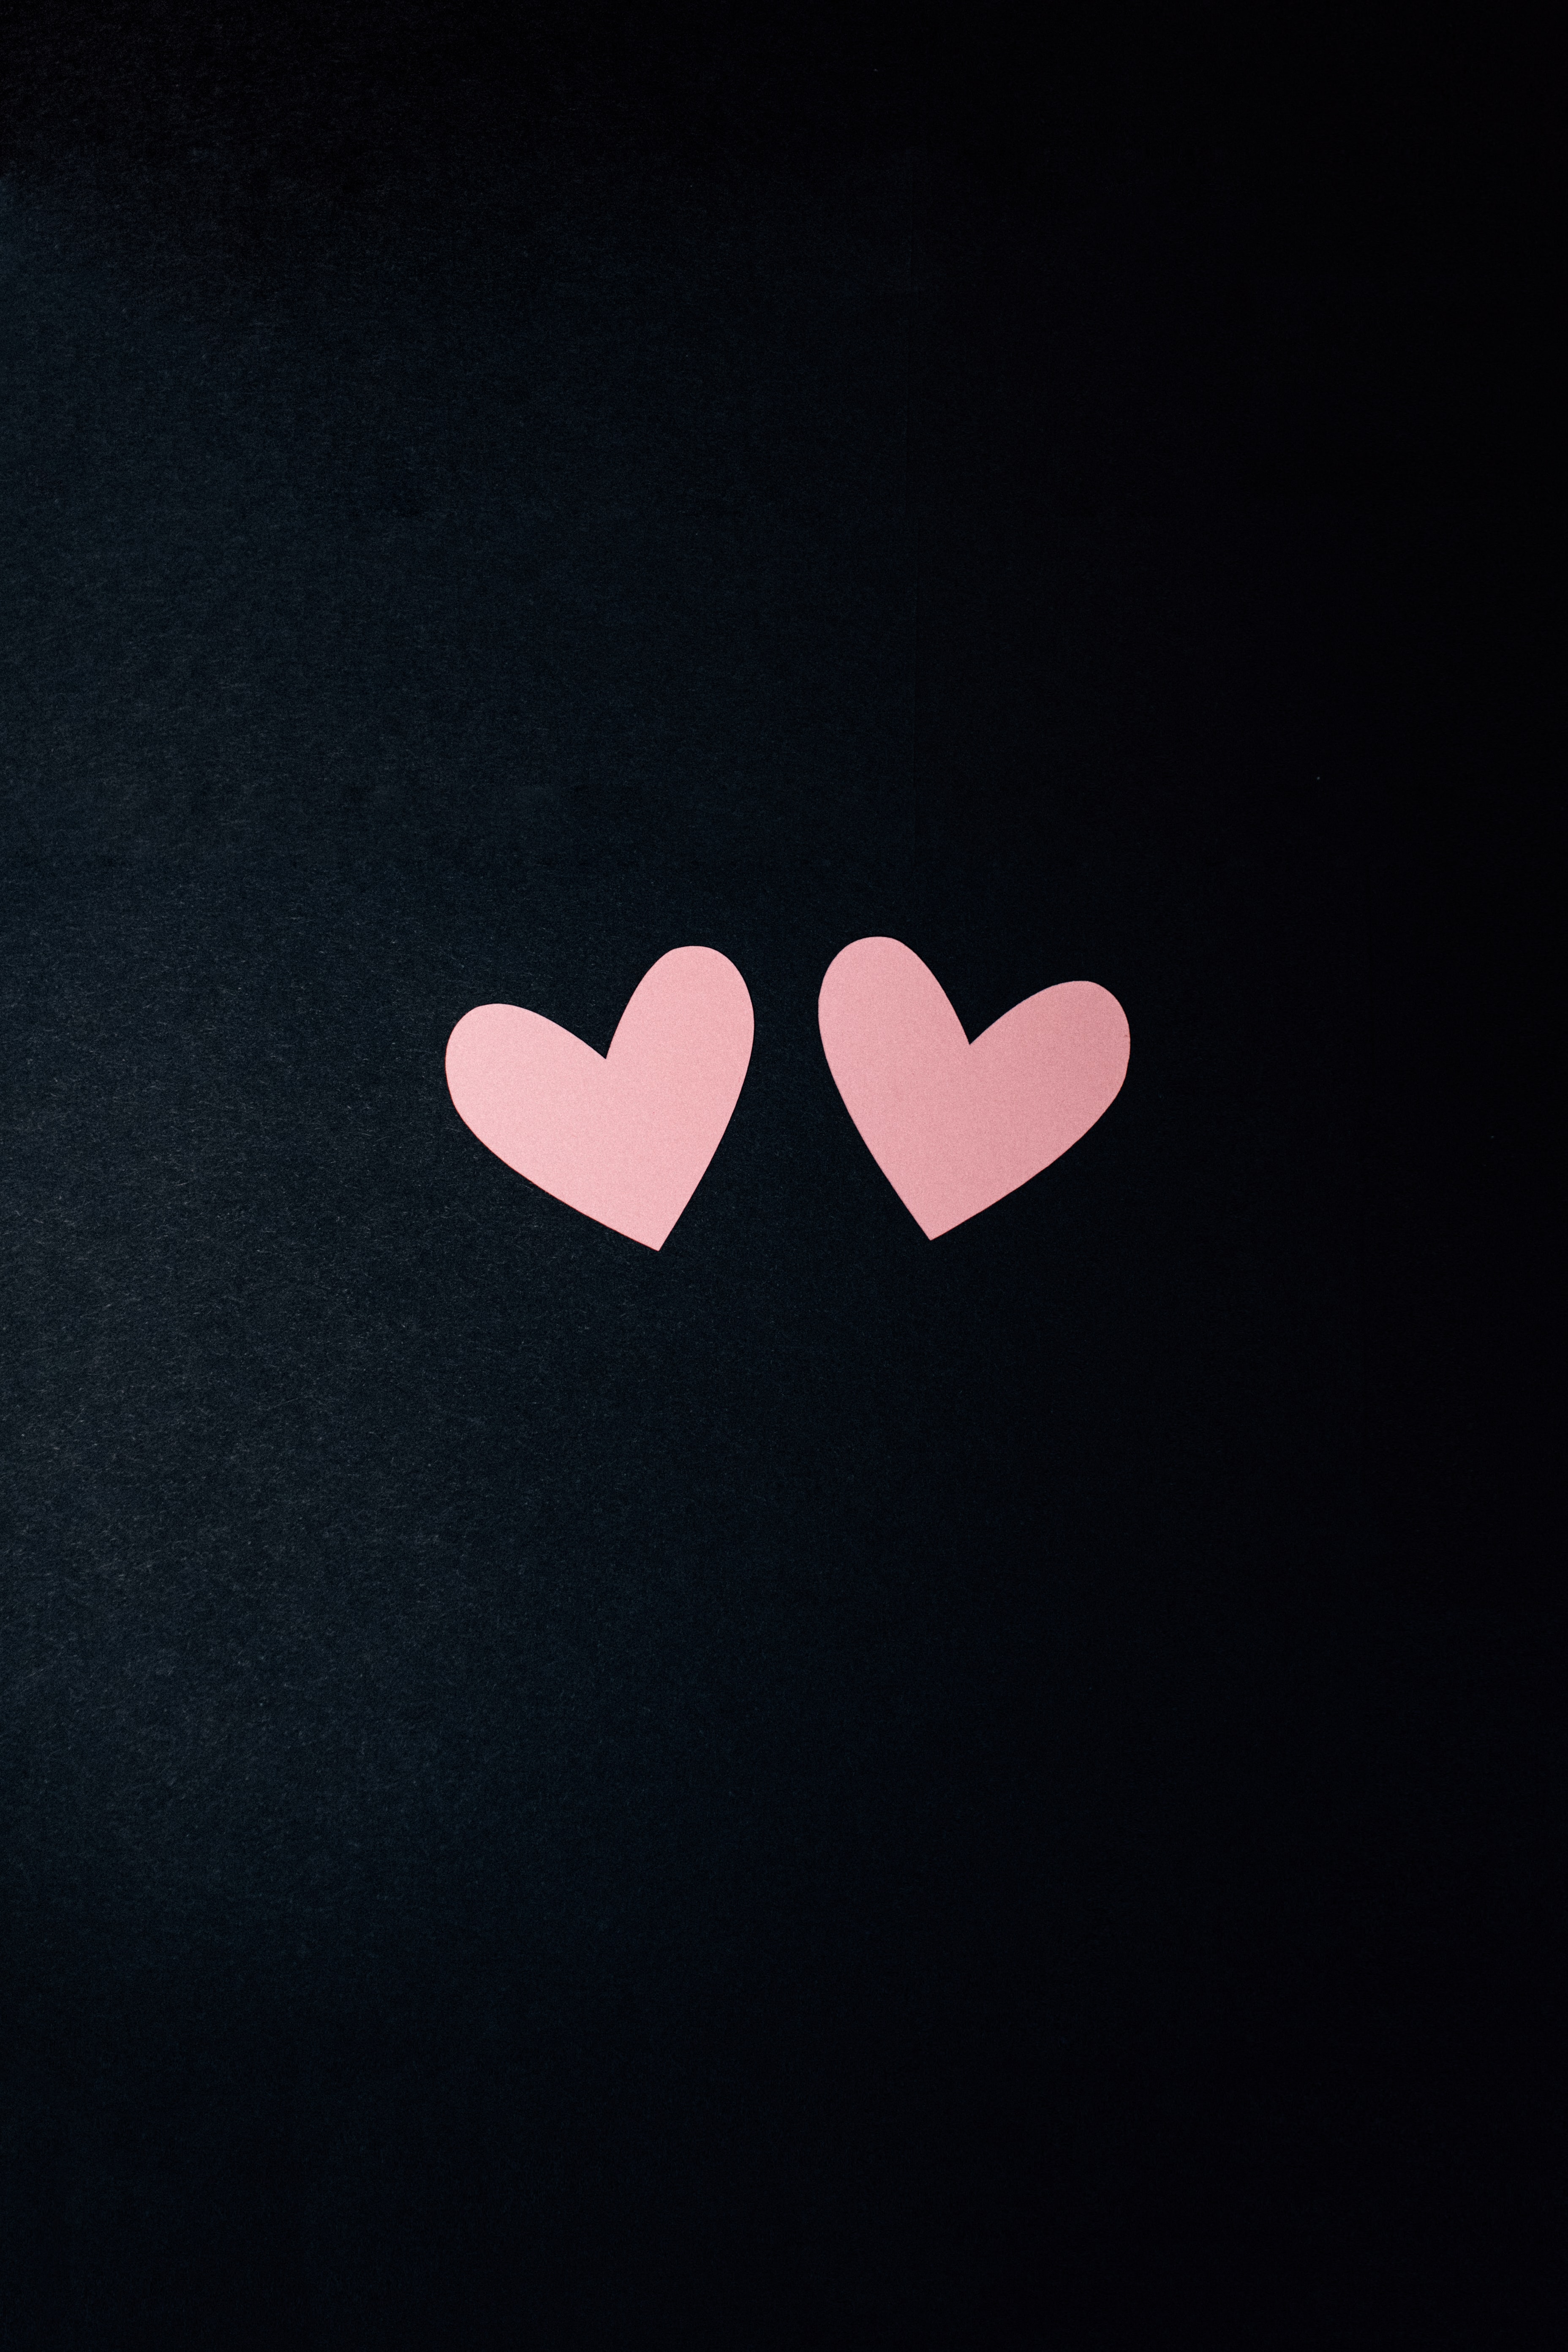 hearts, love, minimalism 2160p